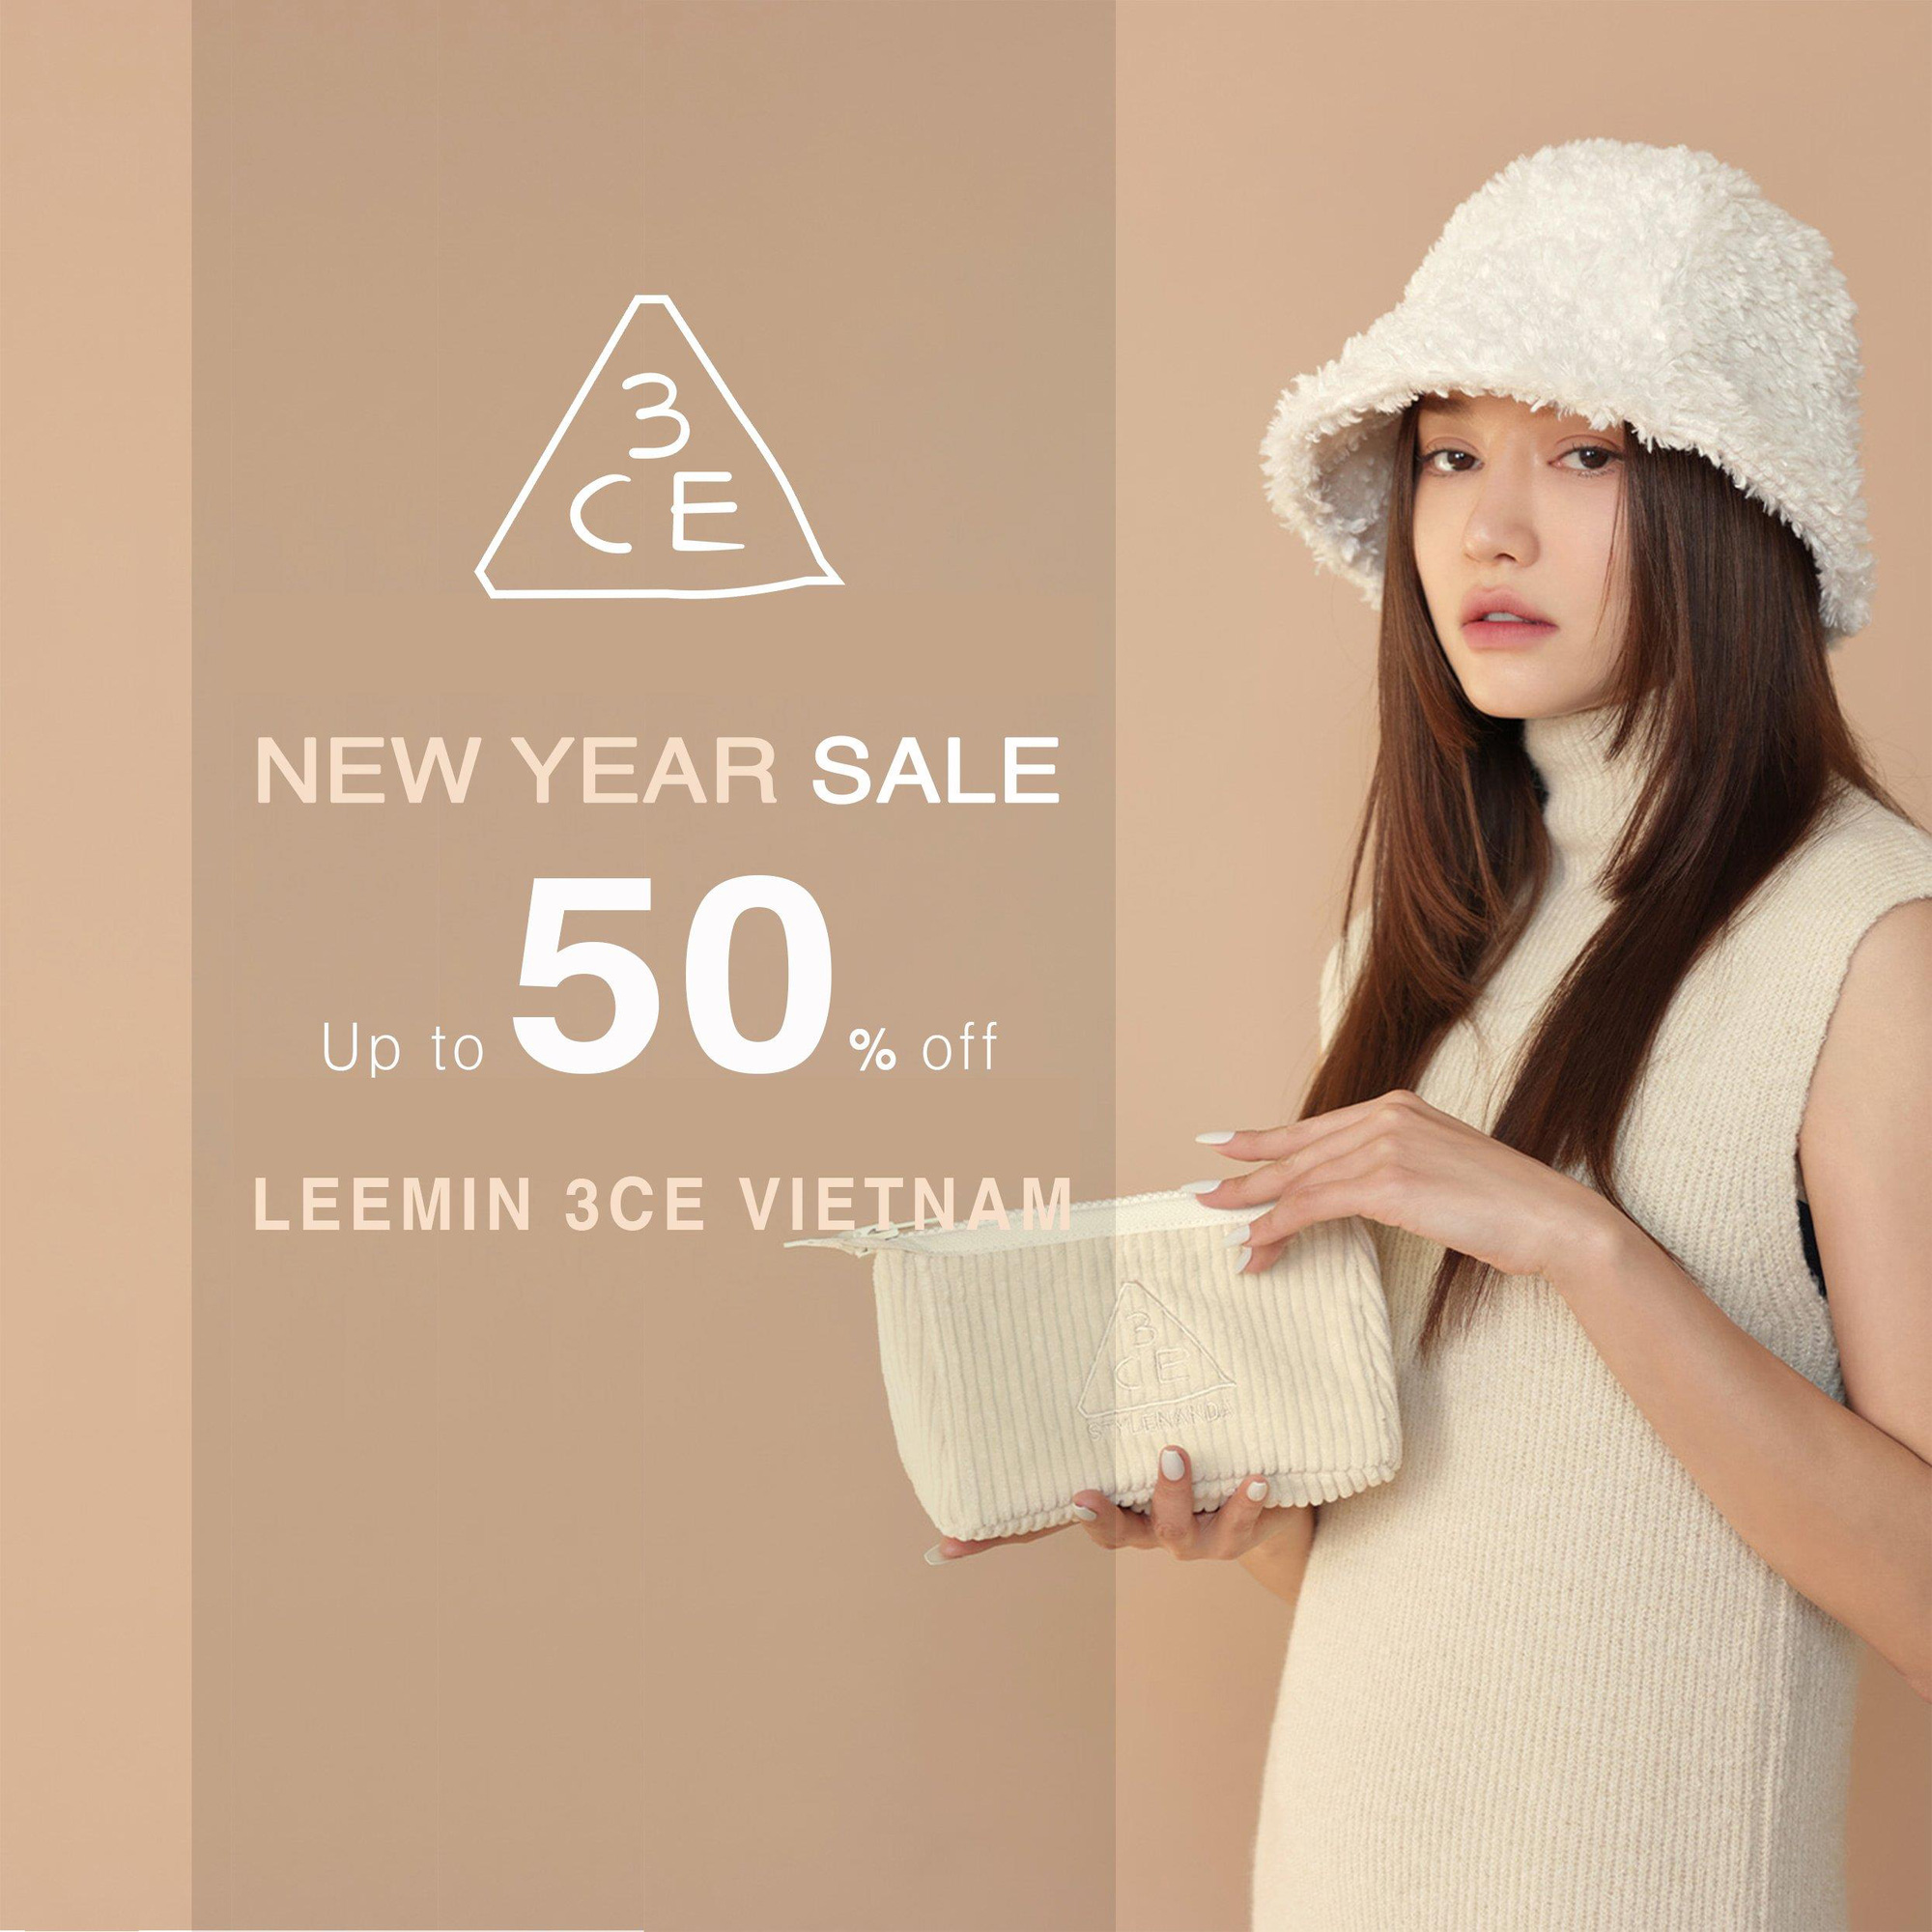 Leemin 3CE VietNam - Chào năm mới rực rỡ với chương trình ưu đãi không thể khủng hơn - Ảnh 2.